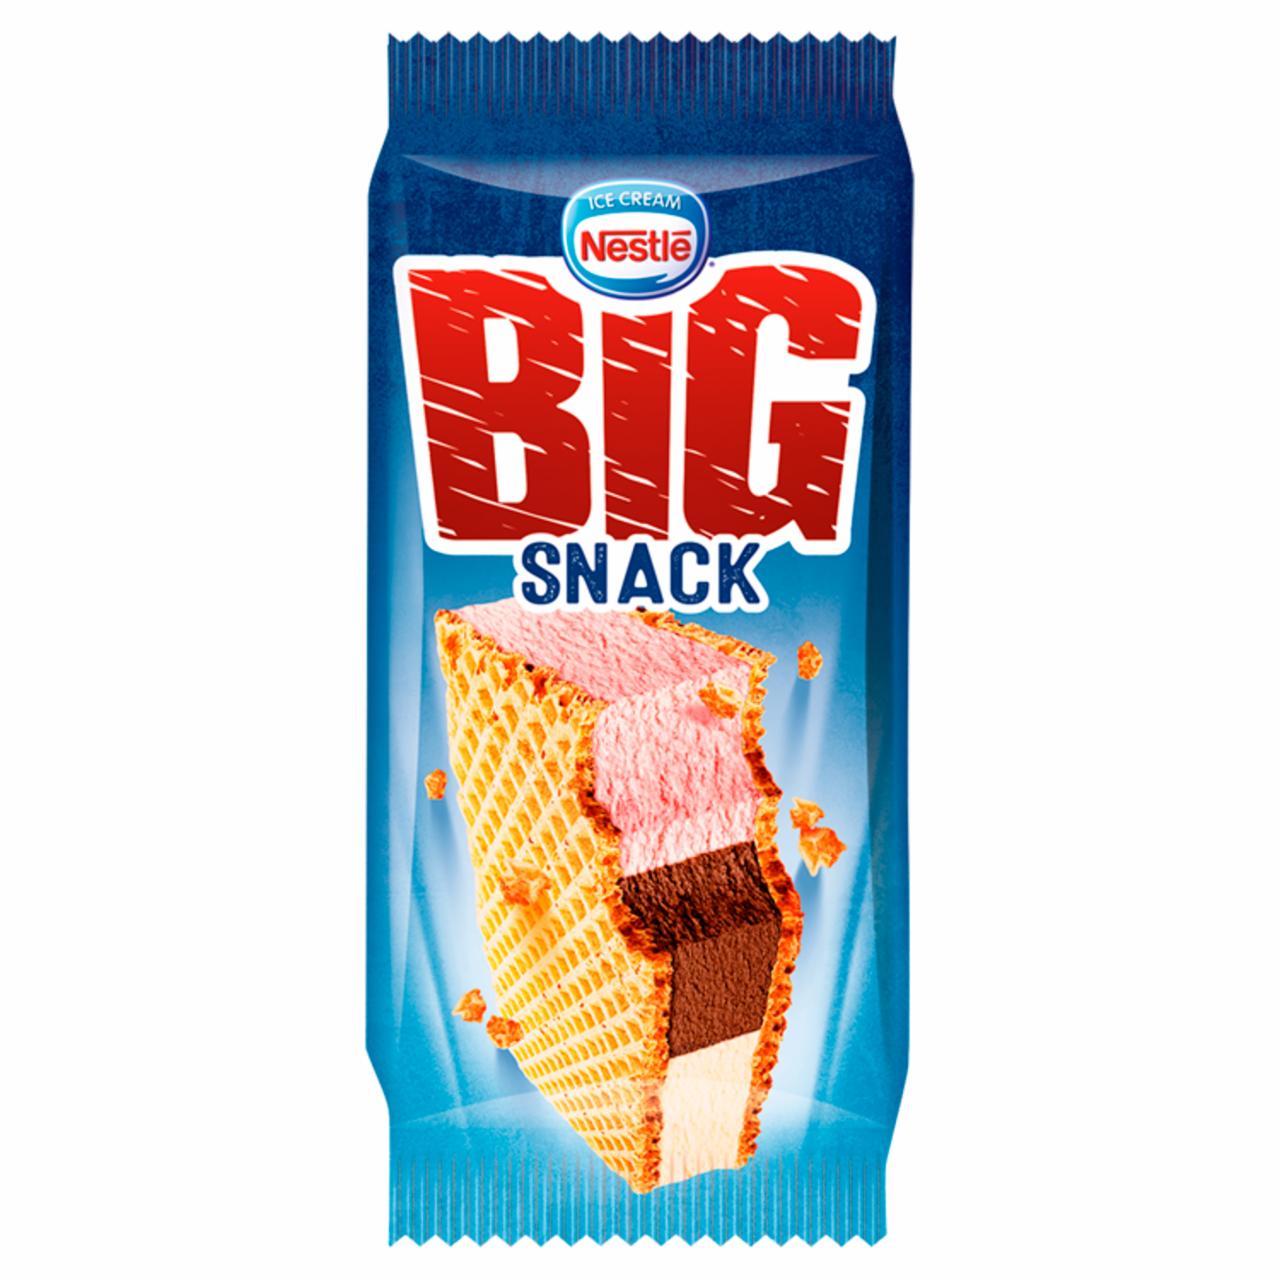 Zdjęcia - Nestlé Big Snack Lody o smaku śmietankowym truskawkowym i czekoladowym w waflach 180 ml